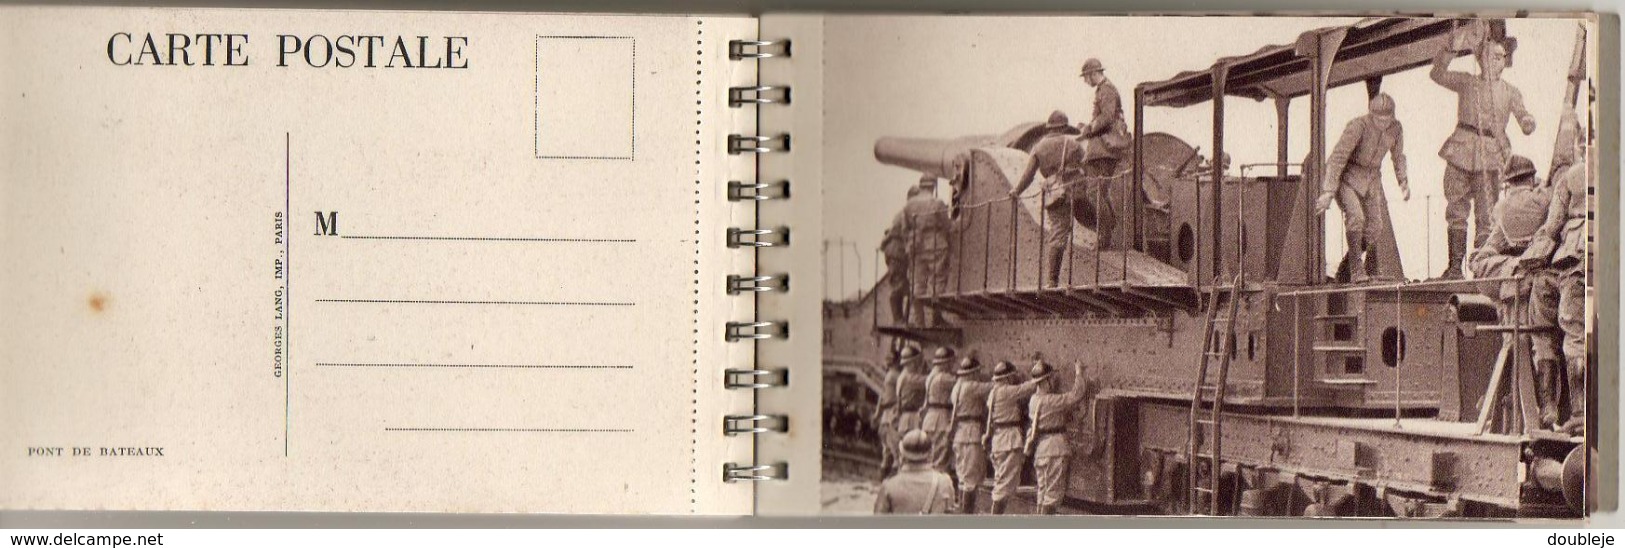 MILITARIA  SUPERBE CARNET SPIRALÉ COMPORTANT 28 Cartes Postales et un Agenda 1939 où sont présentées nos troupes